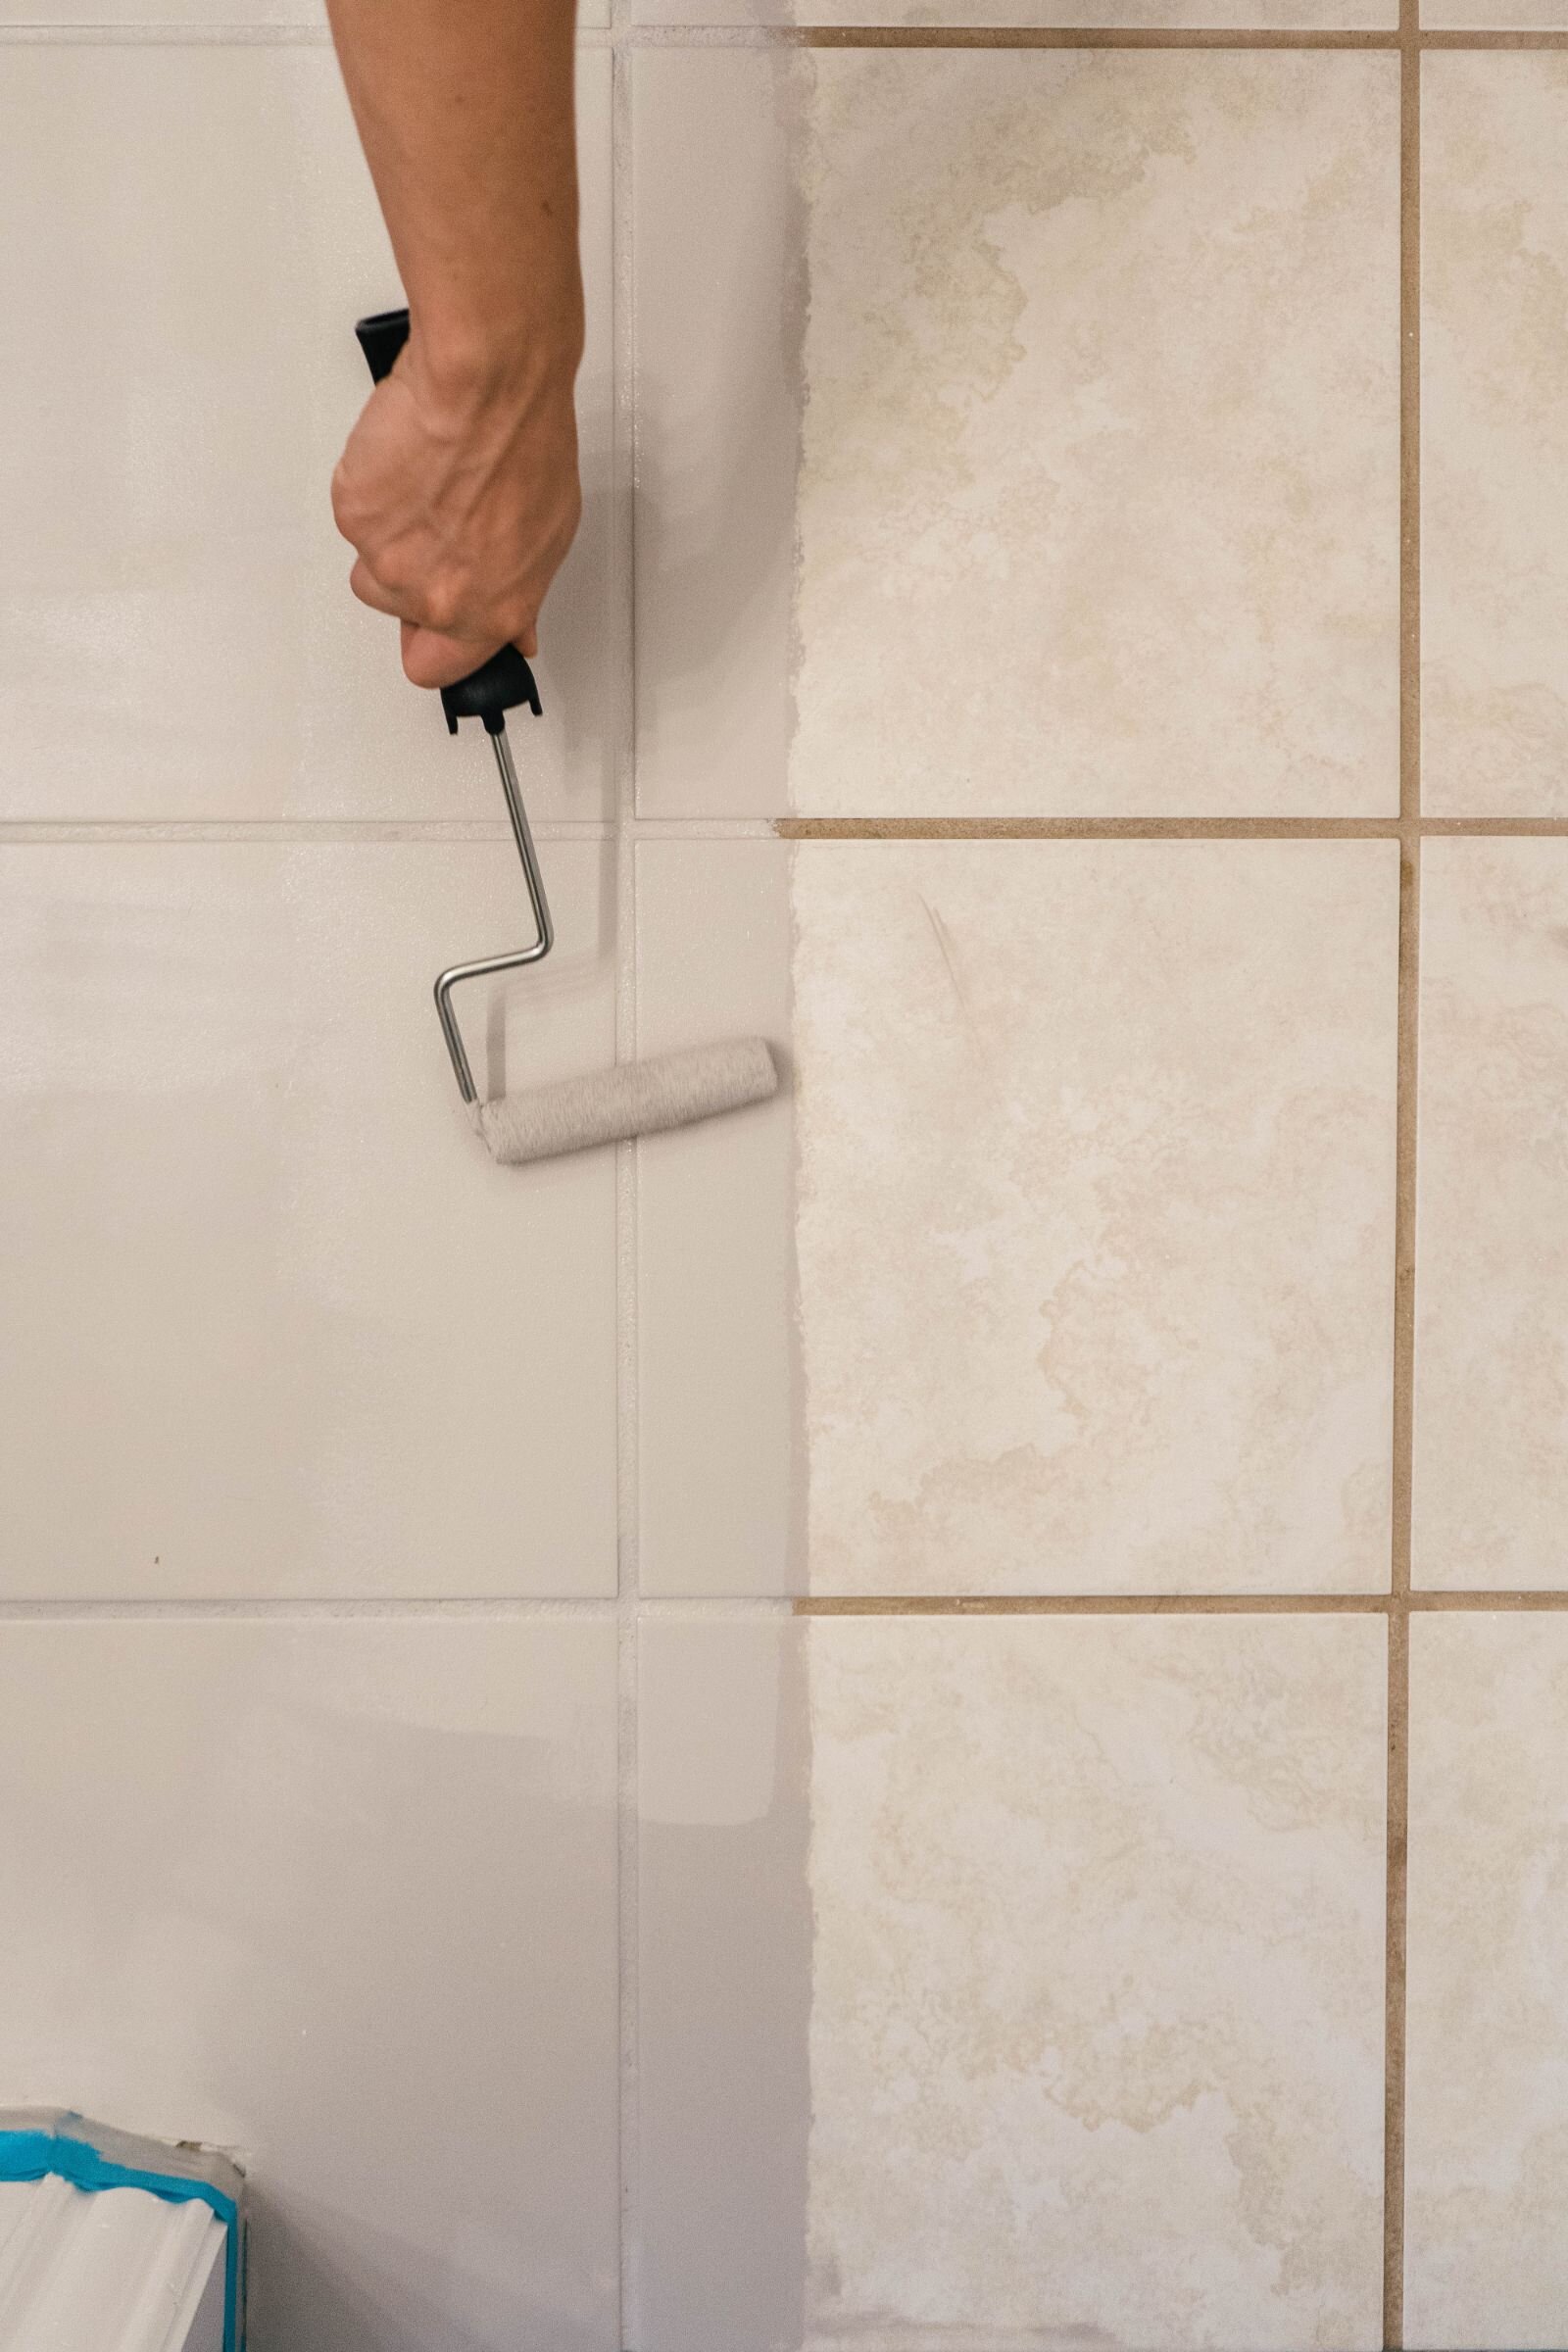 Diy How To Paint Ceramic Floor Tile, White Gloss Floor Tile Paint